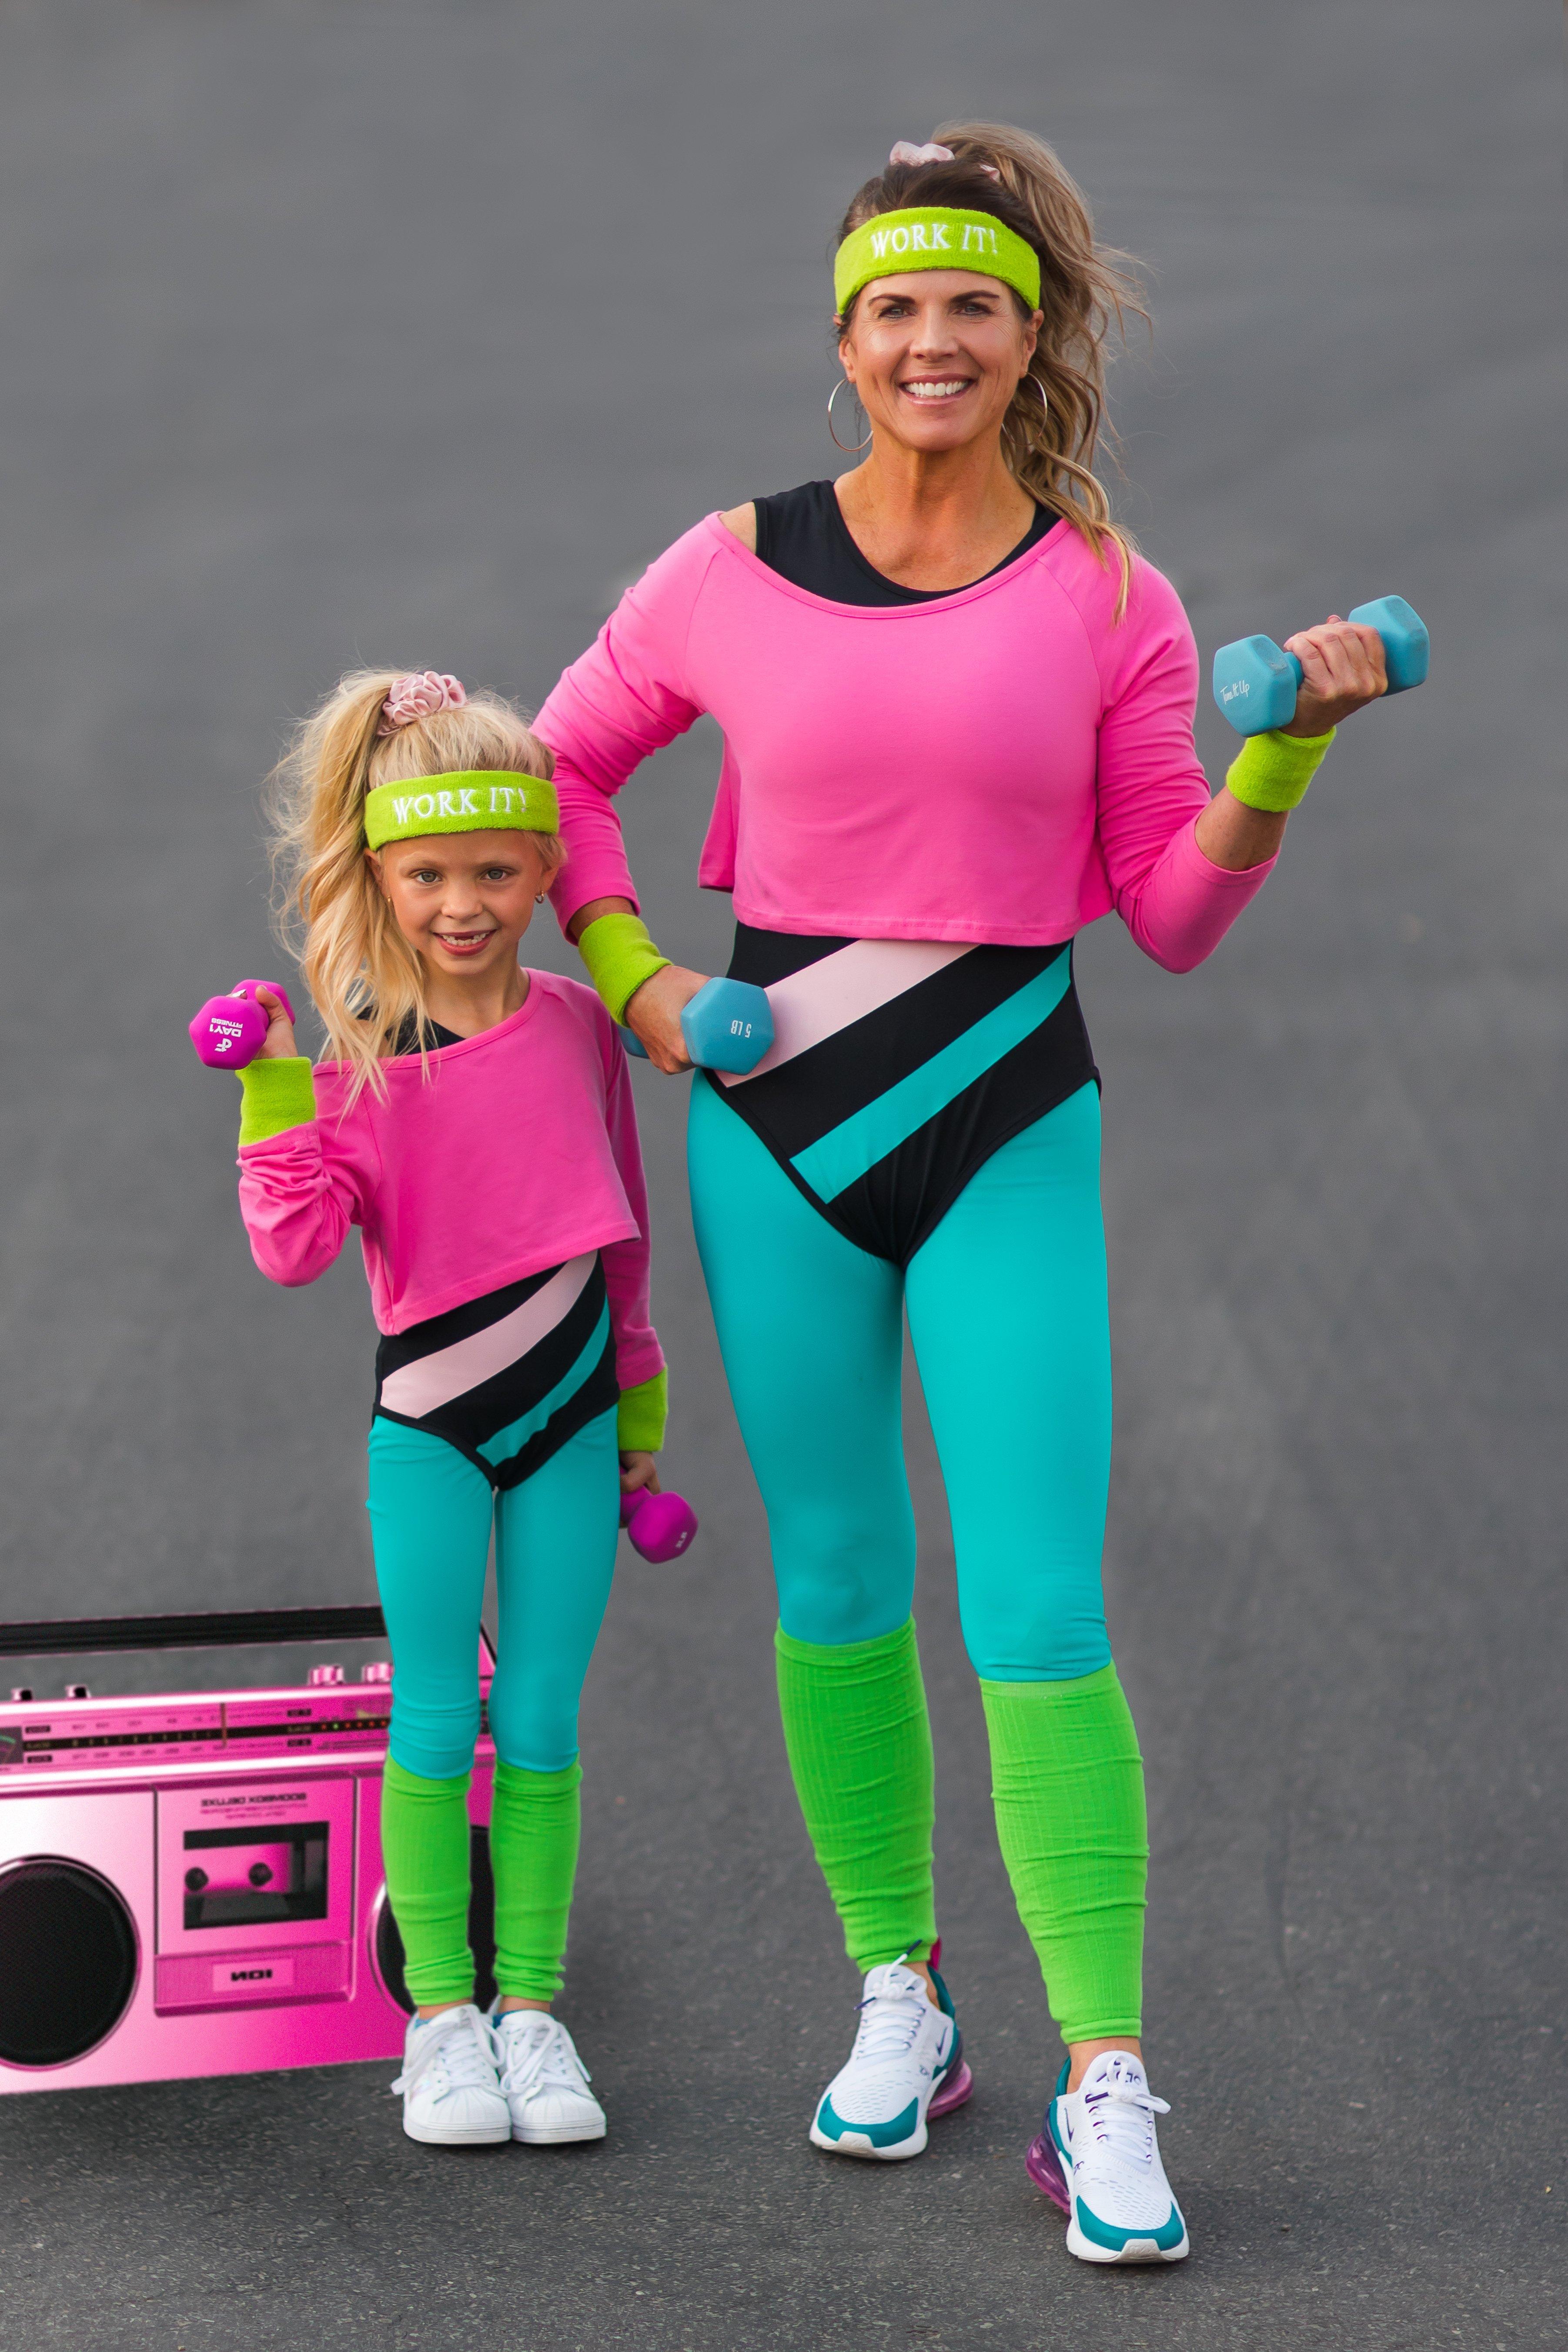 levering aan huis voorkant Echt niet Mom & Me - '80s Workout Costume - COMPLETE SET! | Sparkle In Pink